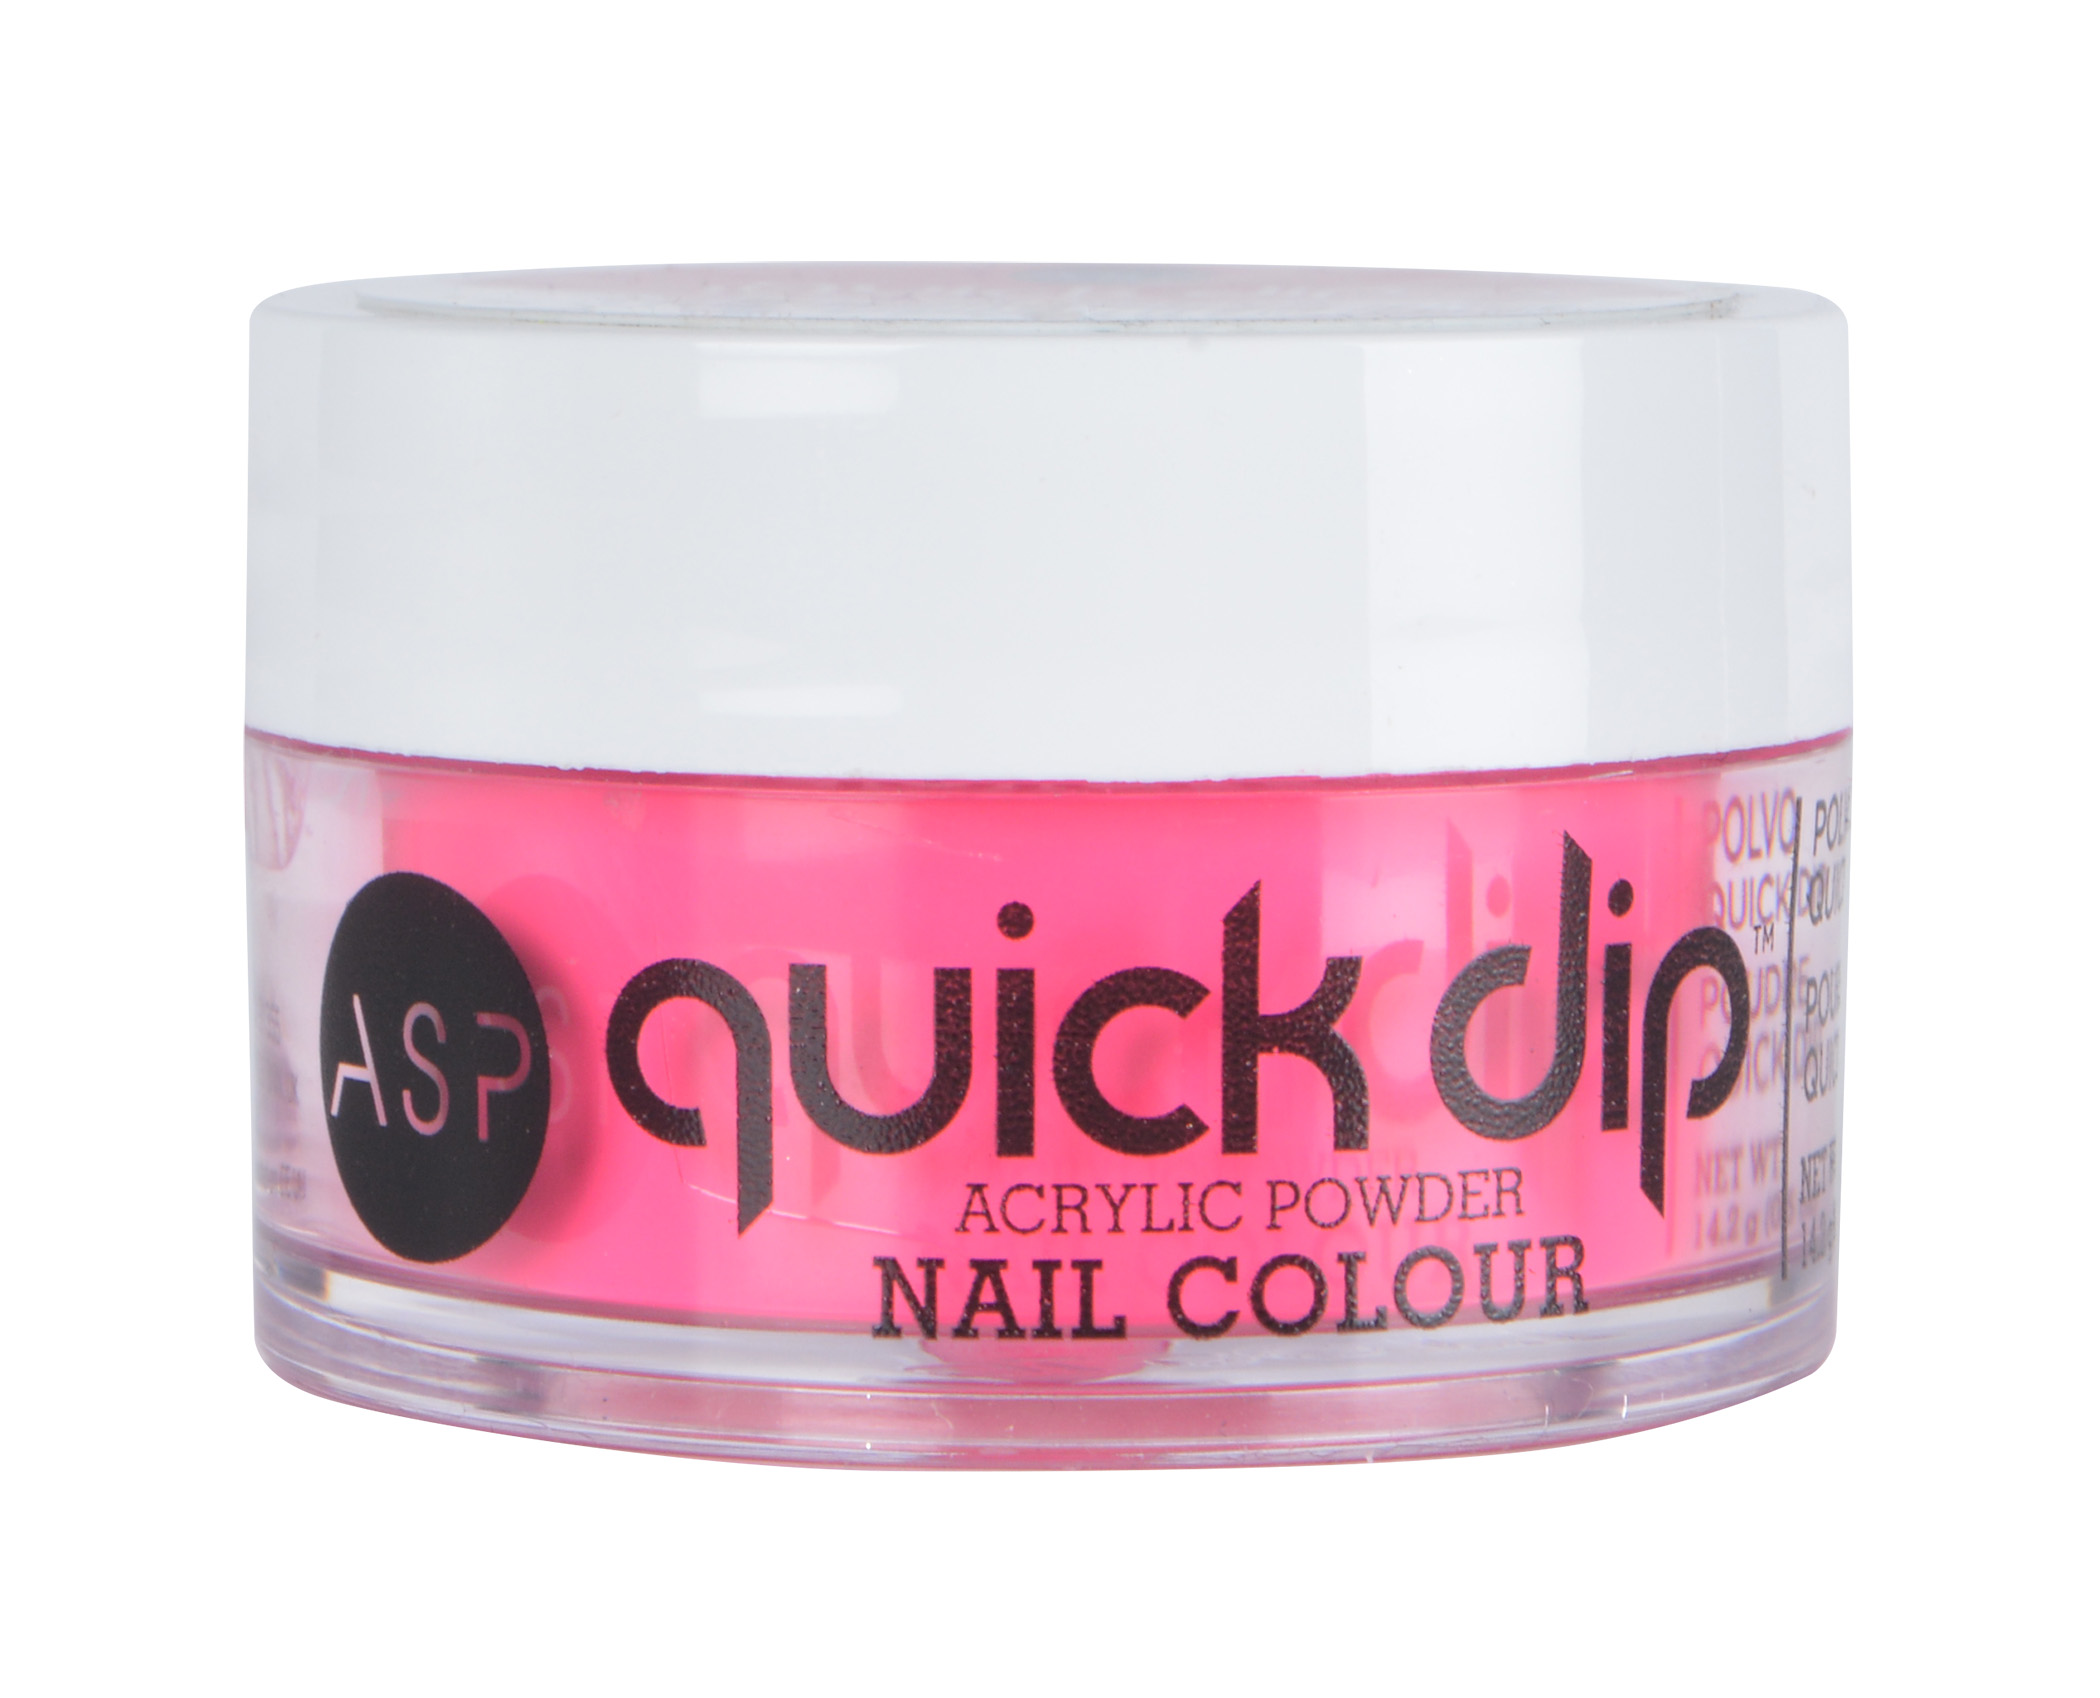 ASP Quick Dip Acrylic Powder - wide 9